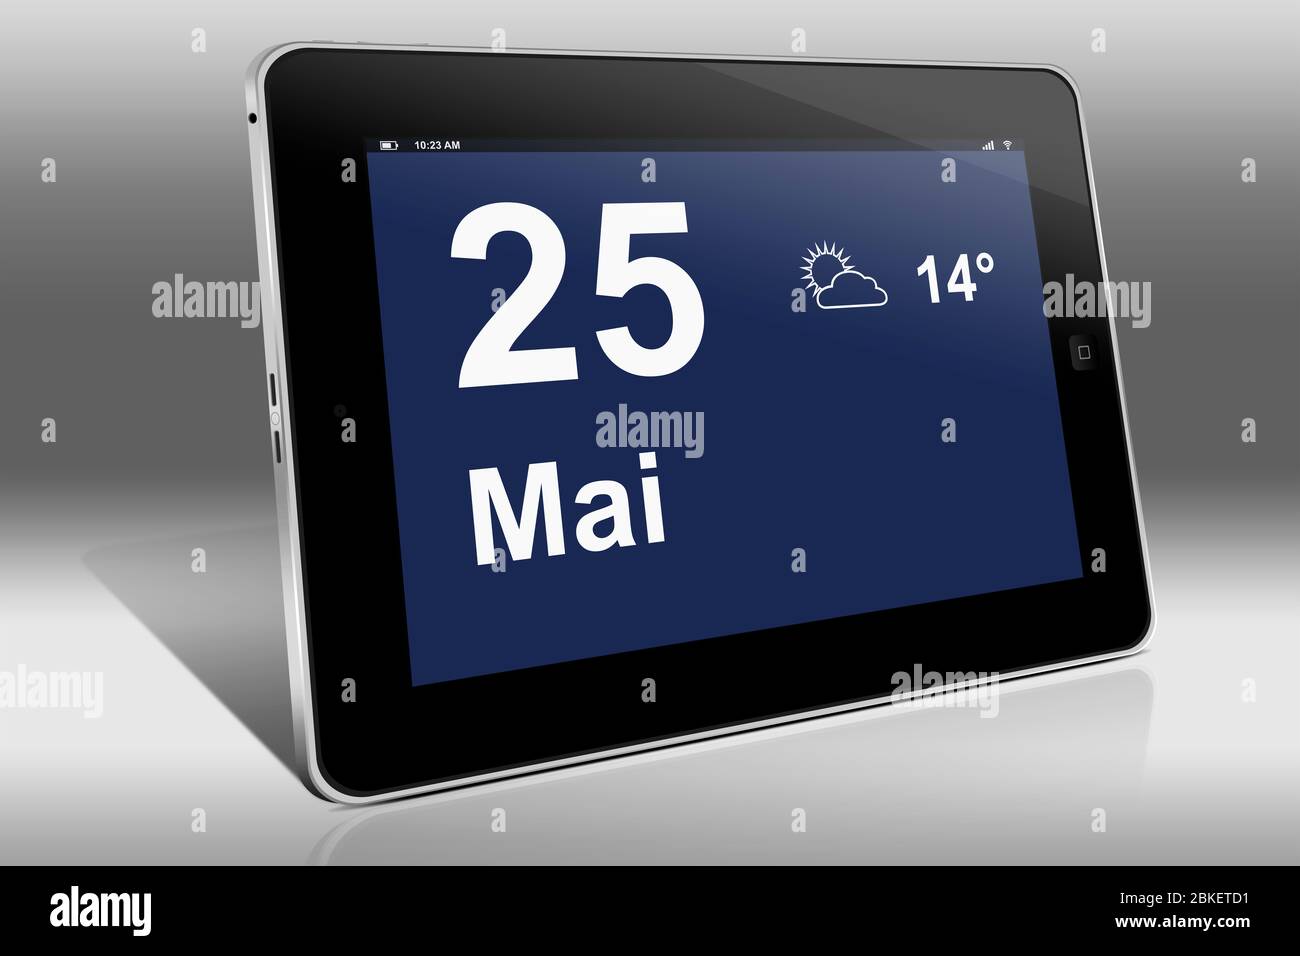 Ein Tablet-Computer zeigt einen Kalender in deutscher Sprache mit dem Datum 25. Mai an. Ein Tablet-Computer zeigt das Datum 25. Mai Stockfoto